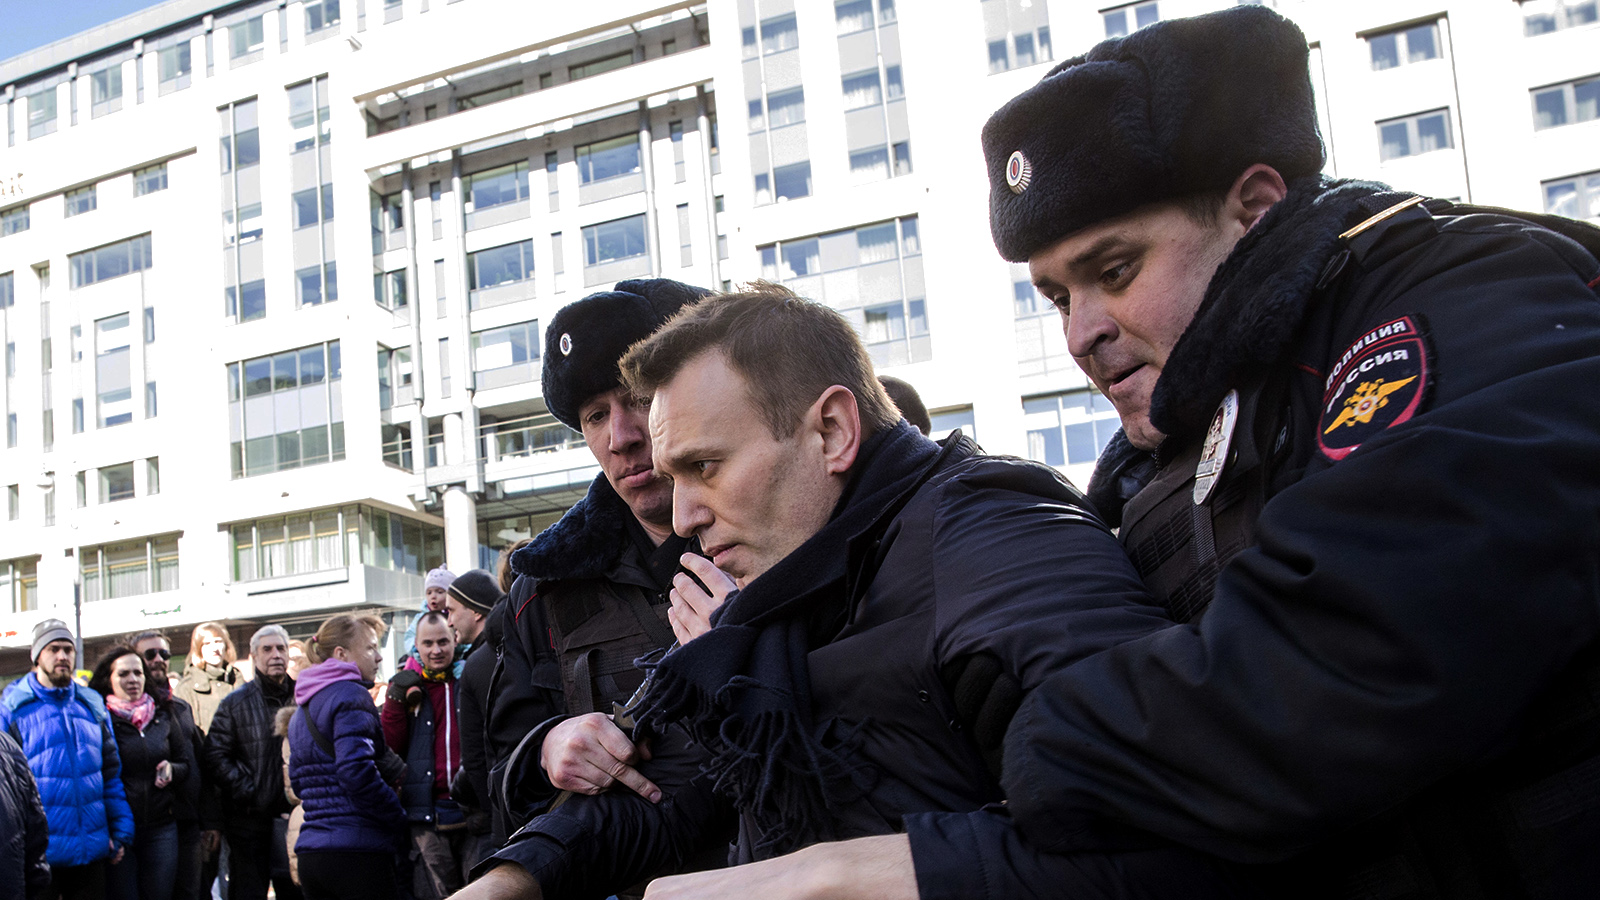 שוטרים עוצרים את אלכסי נבלני בזמן ההפגנה במוסקווה (צילום: Evgeny Feldman for Alexey Navalny's campaign photo via AP).